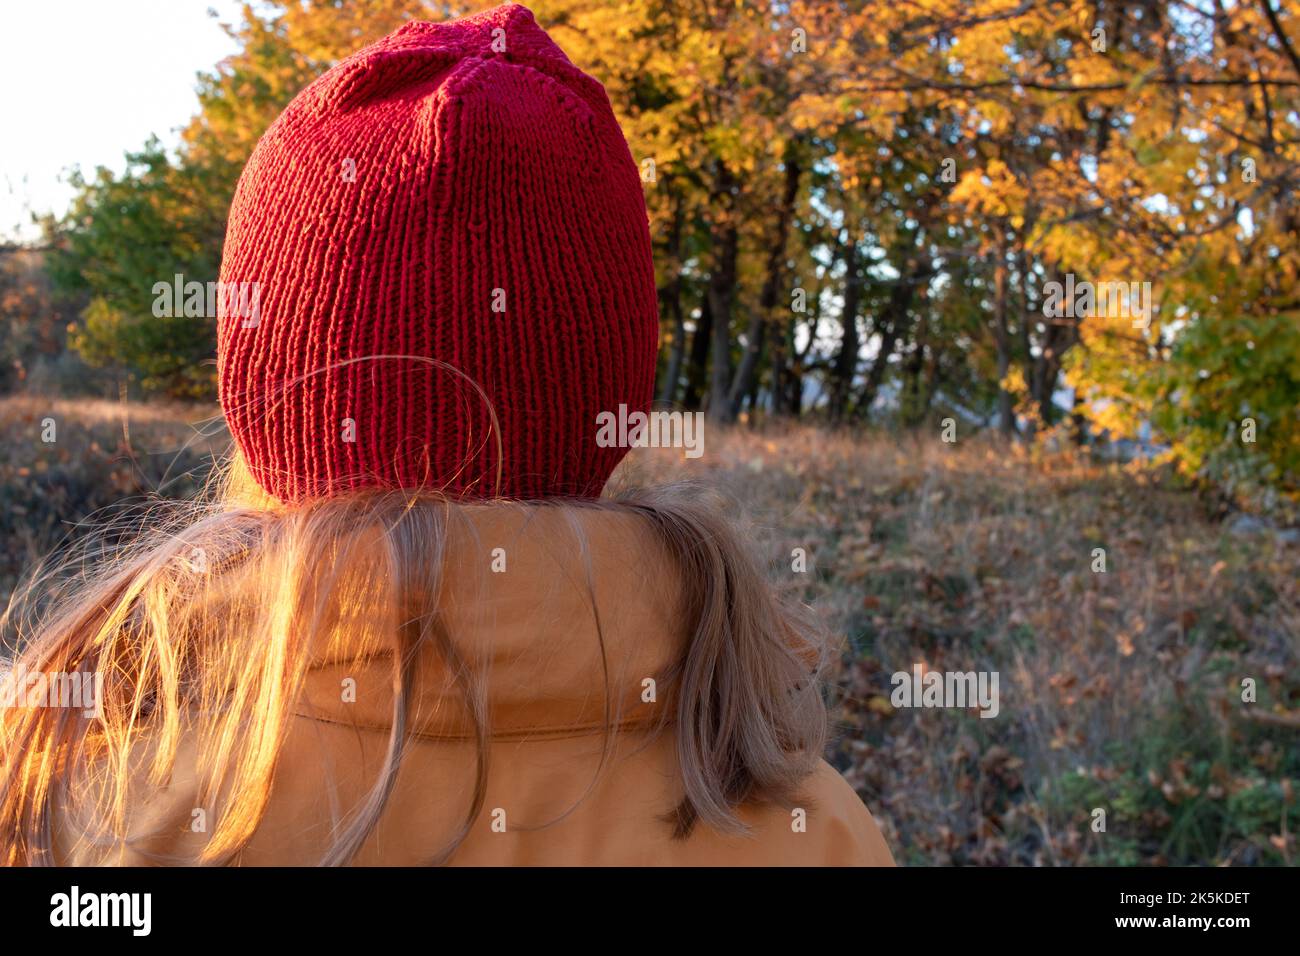 Jeune femme aux longs cheveux blonds dans un chapeau rouge et un manteau jaune marchant dans le parc d'automne. Vue arrière. Couleurs automnales vives. Temps ensoleillé. Profitez de la vie Banque D'Images